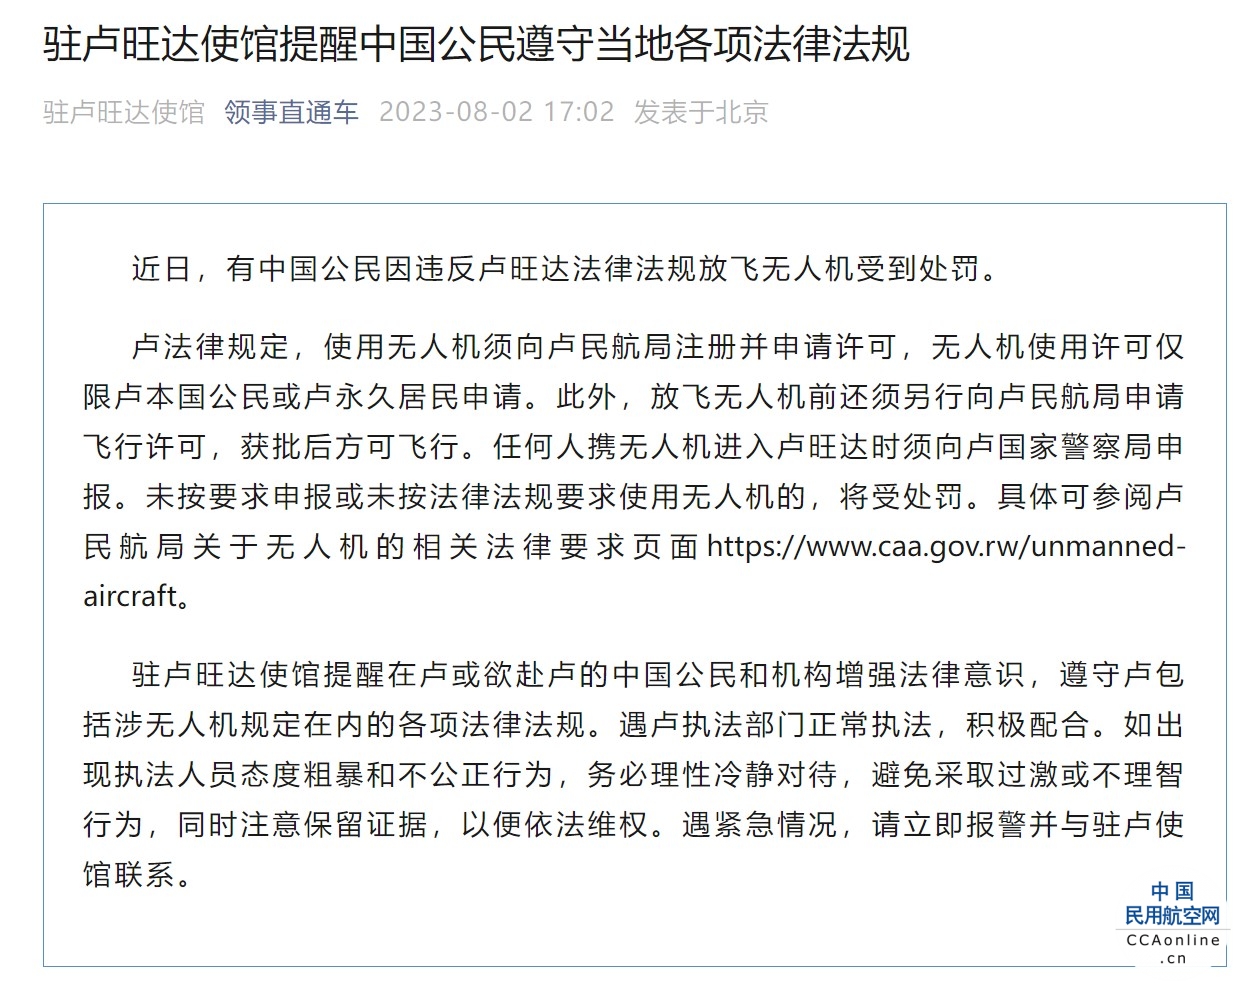 中国公民因违反卢旺达法律法规放飞无人机受到处罚，使馆提醒公民遵守当地各项法律法规